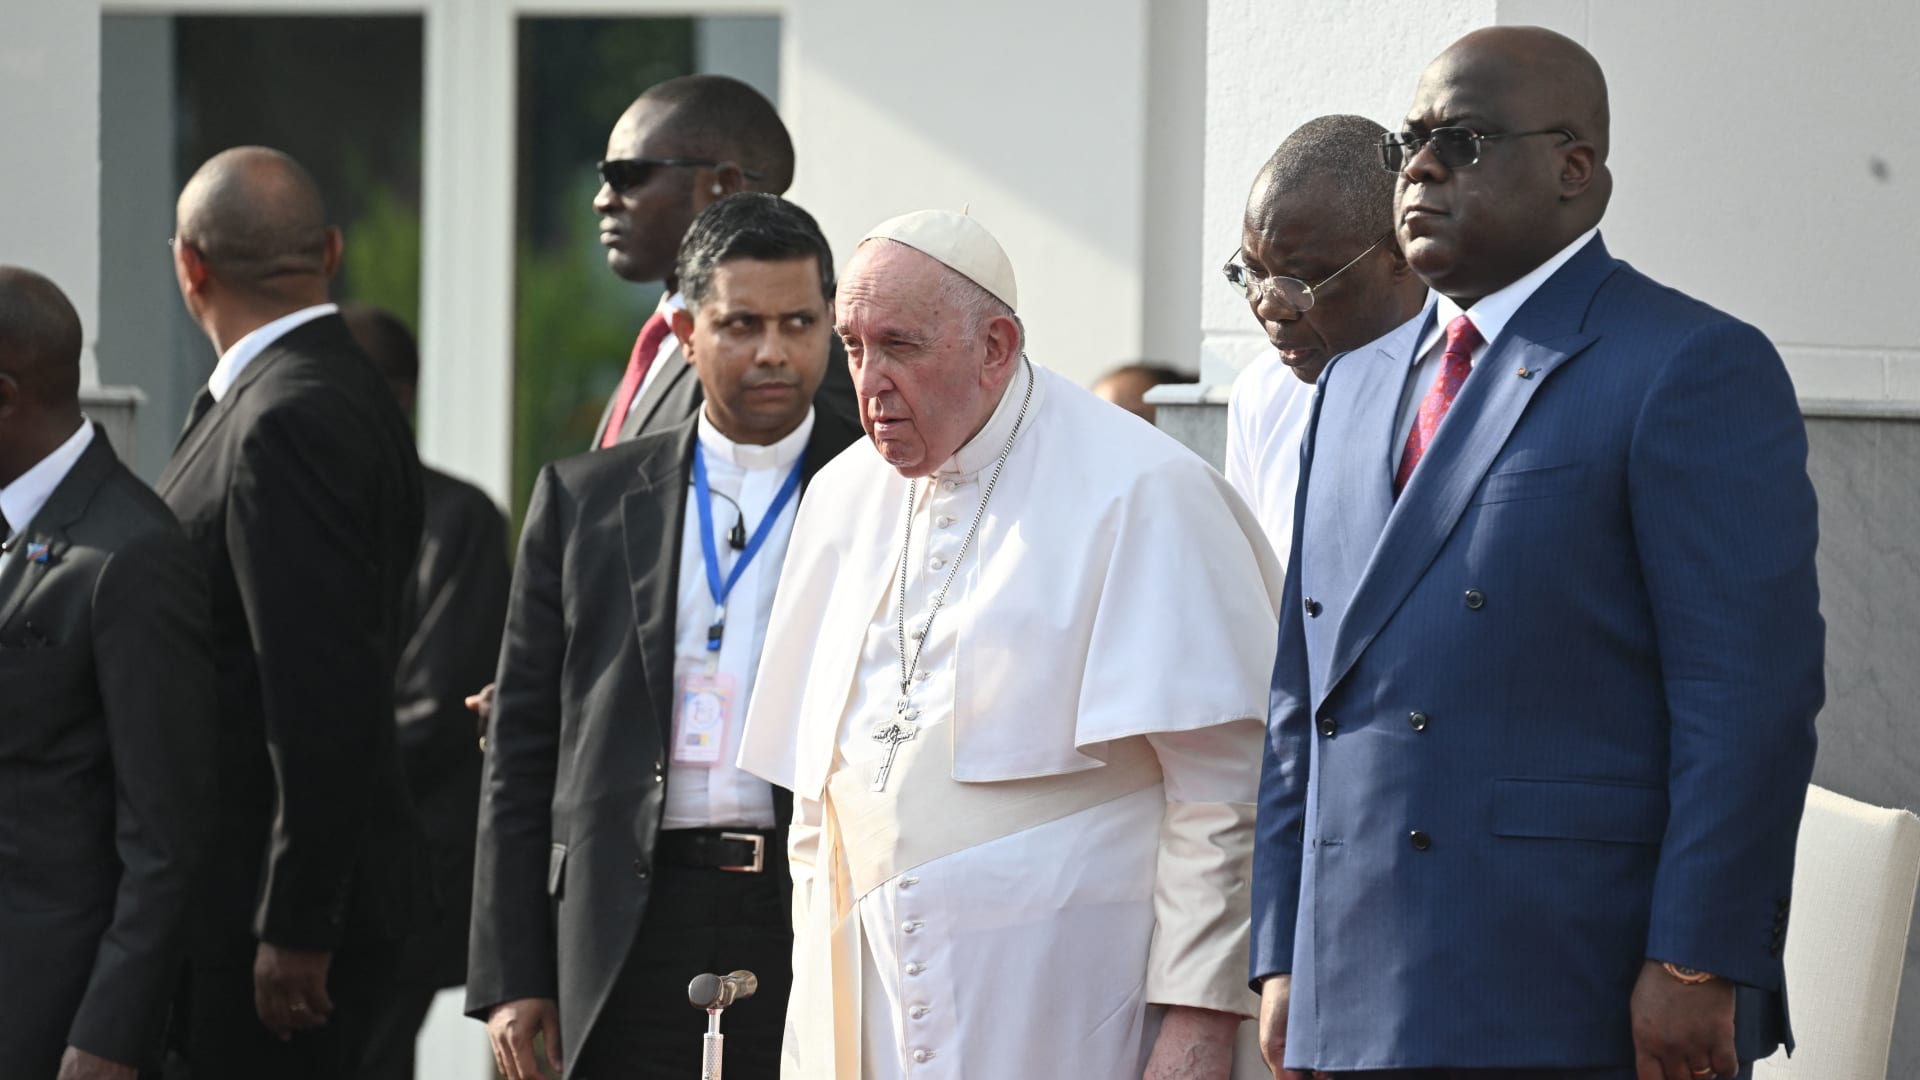 البابا فرنسيس يخاطب من يستغلون موارد أفريقيا الطبيعية: ارفعوا أيديكم عنها